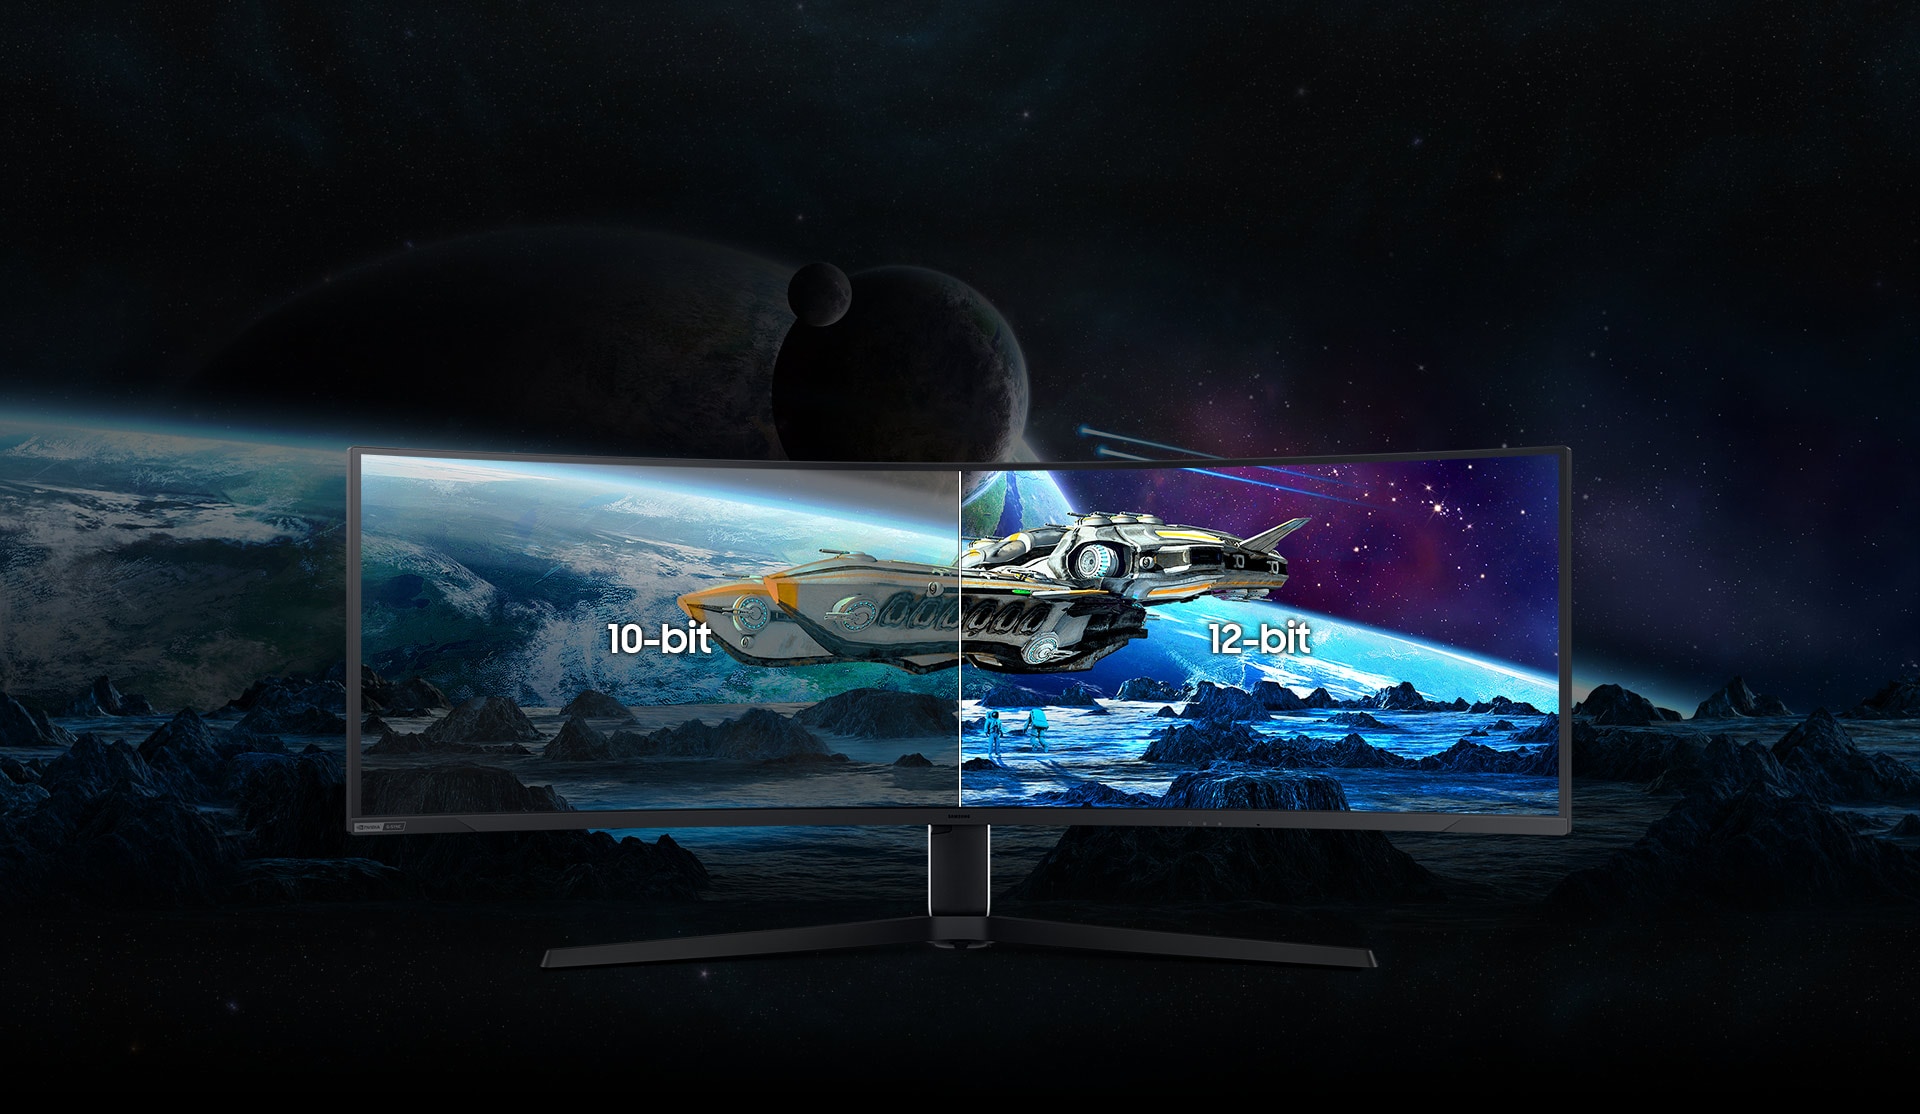 屏幕上显示一艘黄灰相间的宇宙飞船在一个多山的星球上空低空飞行。飞船后面是另一颗行星，它从屏幕延伸到显示器后面的背景中。奥德赛Neo G9的屏幕分为两部分:左边是浅灰色，上面写着“10位”字样。而右侧则用“12位”标记的颜色更明亮、更清晰。随着屏幕合而为一，与屏幕外的部分相比，屏幕的颜色更清晰，细节也更多，对比度也更高。